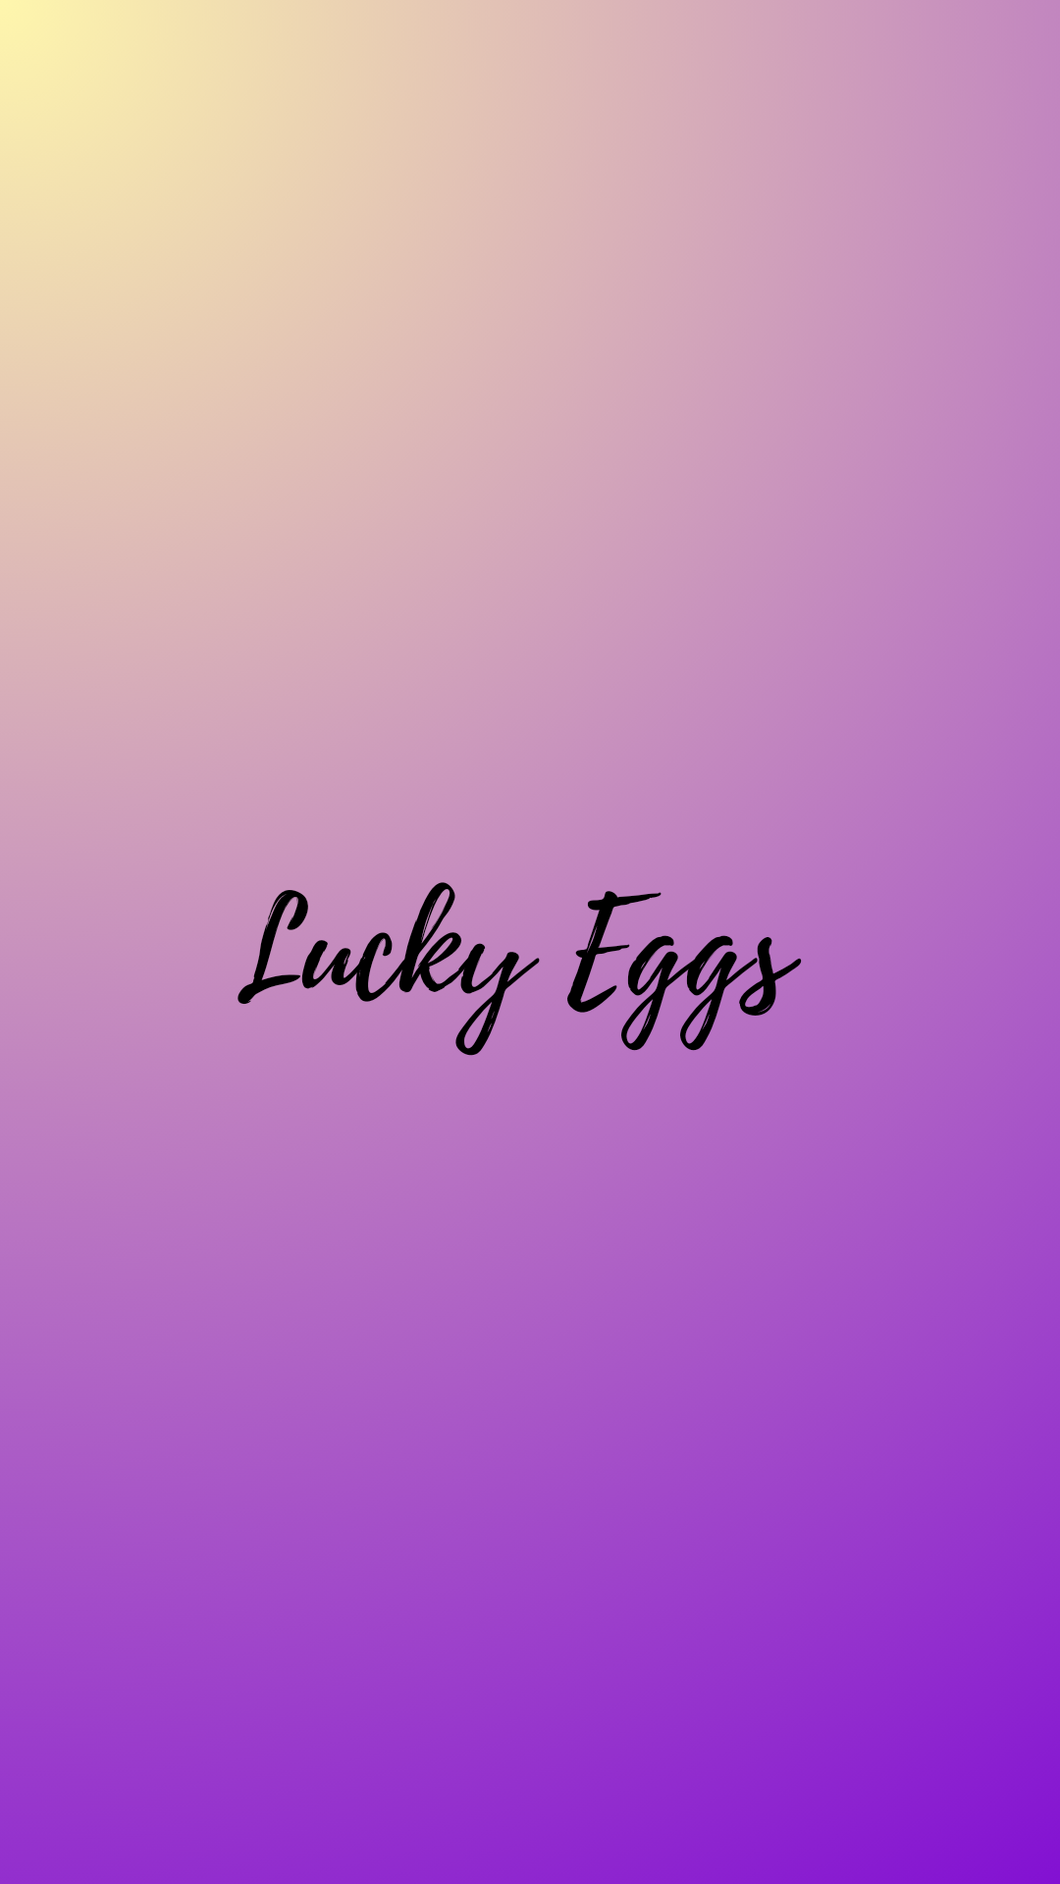 Lucky eggs